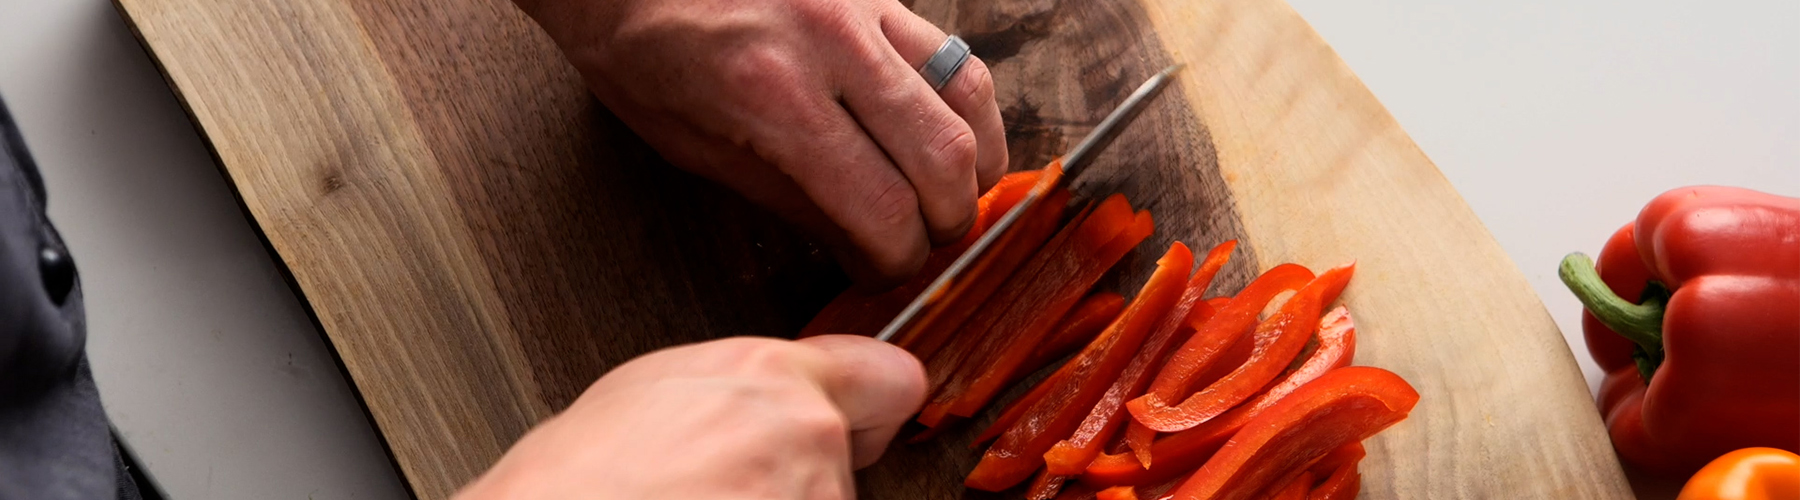 How to Cut a Pepper